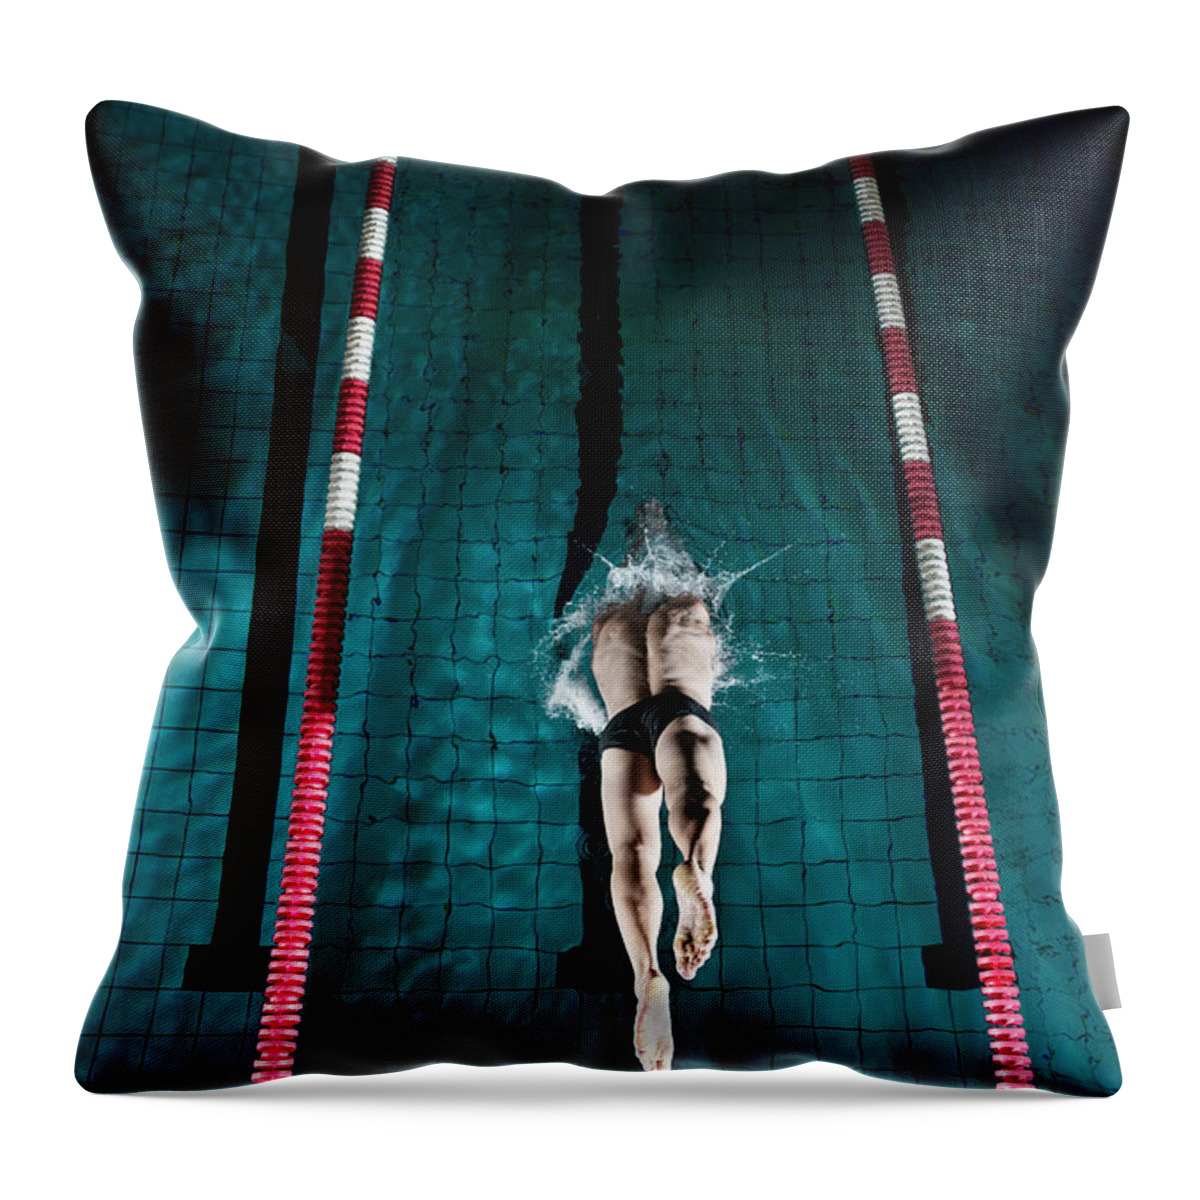 Copenhagen Throw Pillow featuring the photograph Professional Swimmer #7 by Henrik Sorensen